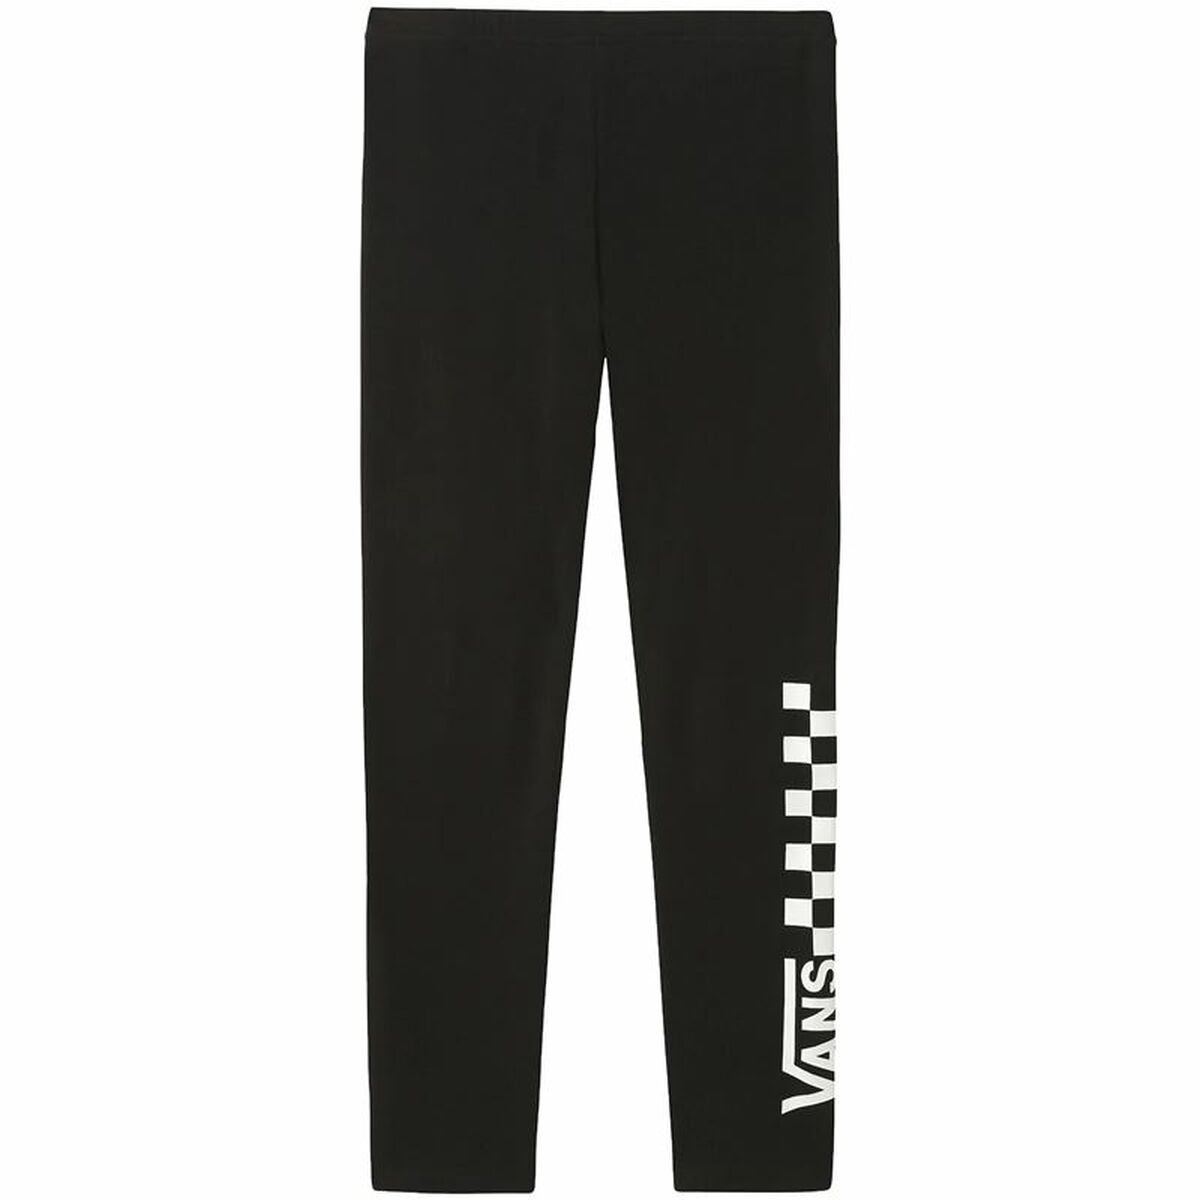 Sport leggings for Women Vans Blackboard Black